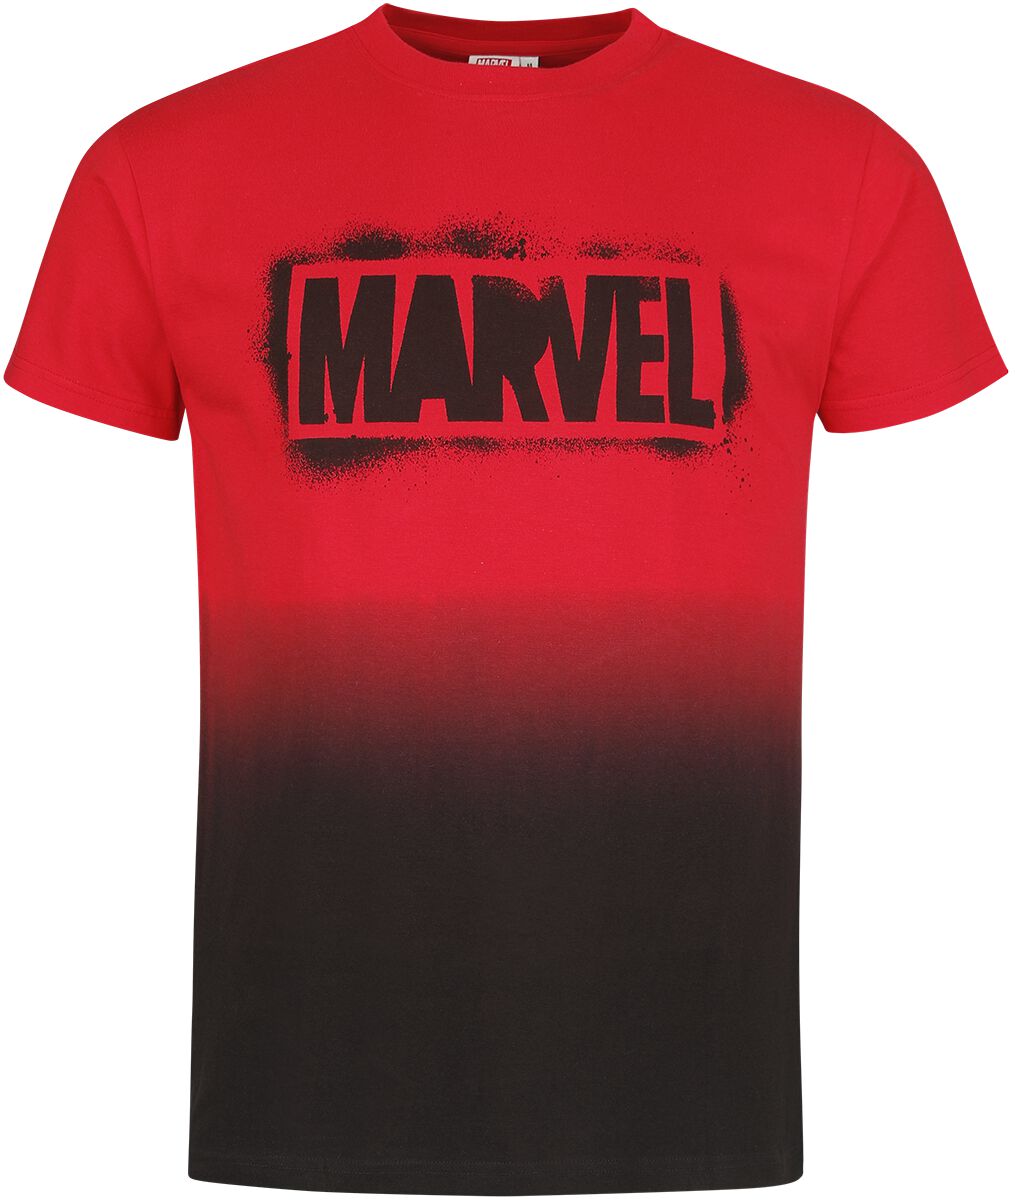 Marvel - Marvel T-Shirt - Logo - S bis XXL - für Männer - Größe XXL - multicolor  - EMP exklusives Merchandise!